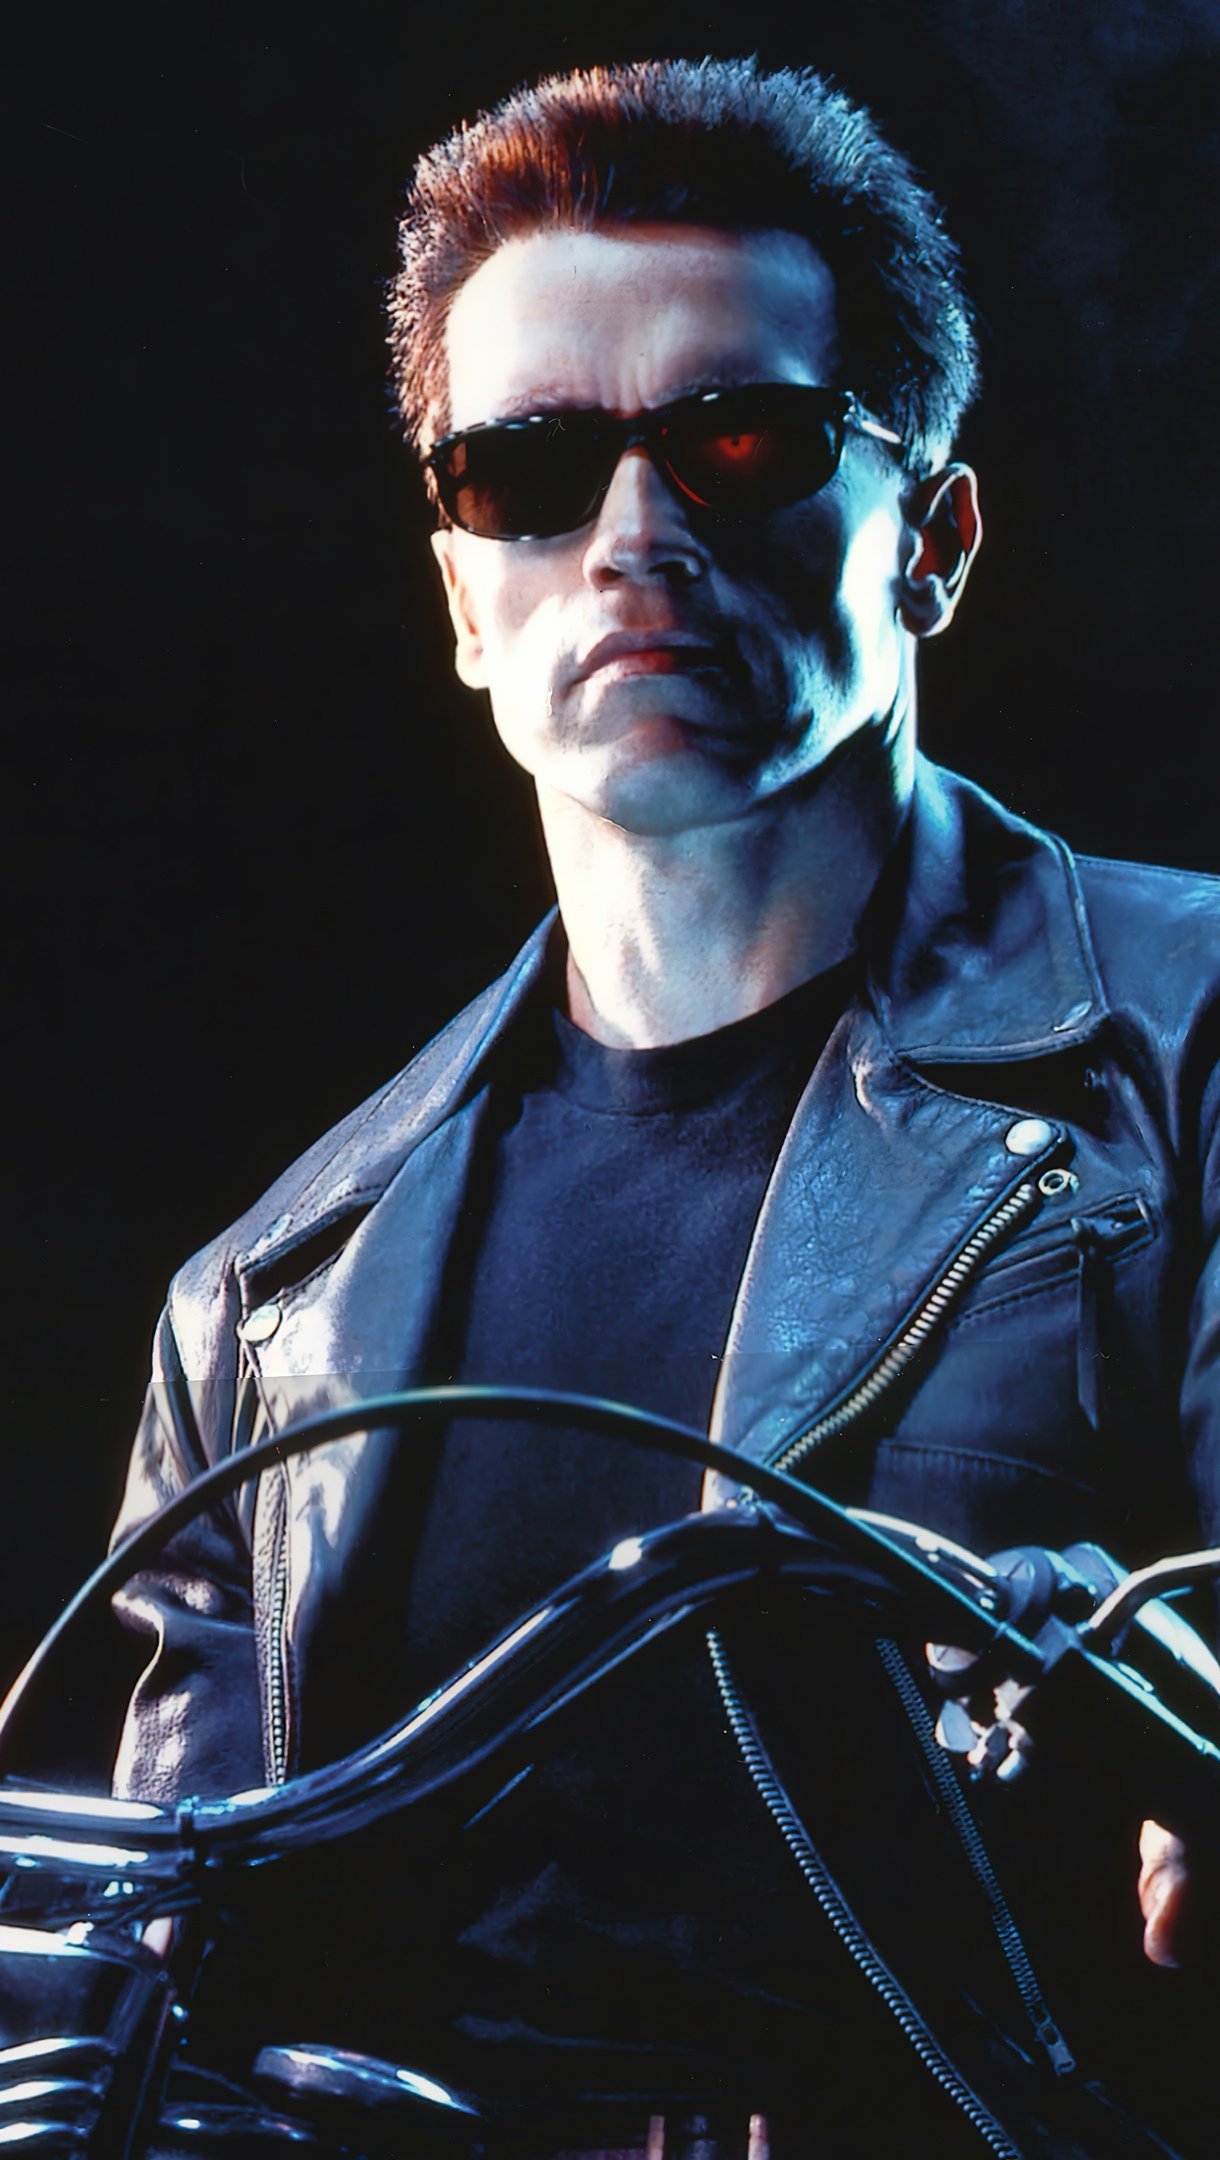 Fondos de pantalla Terminator 2 El juicio final Vertical